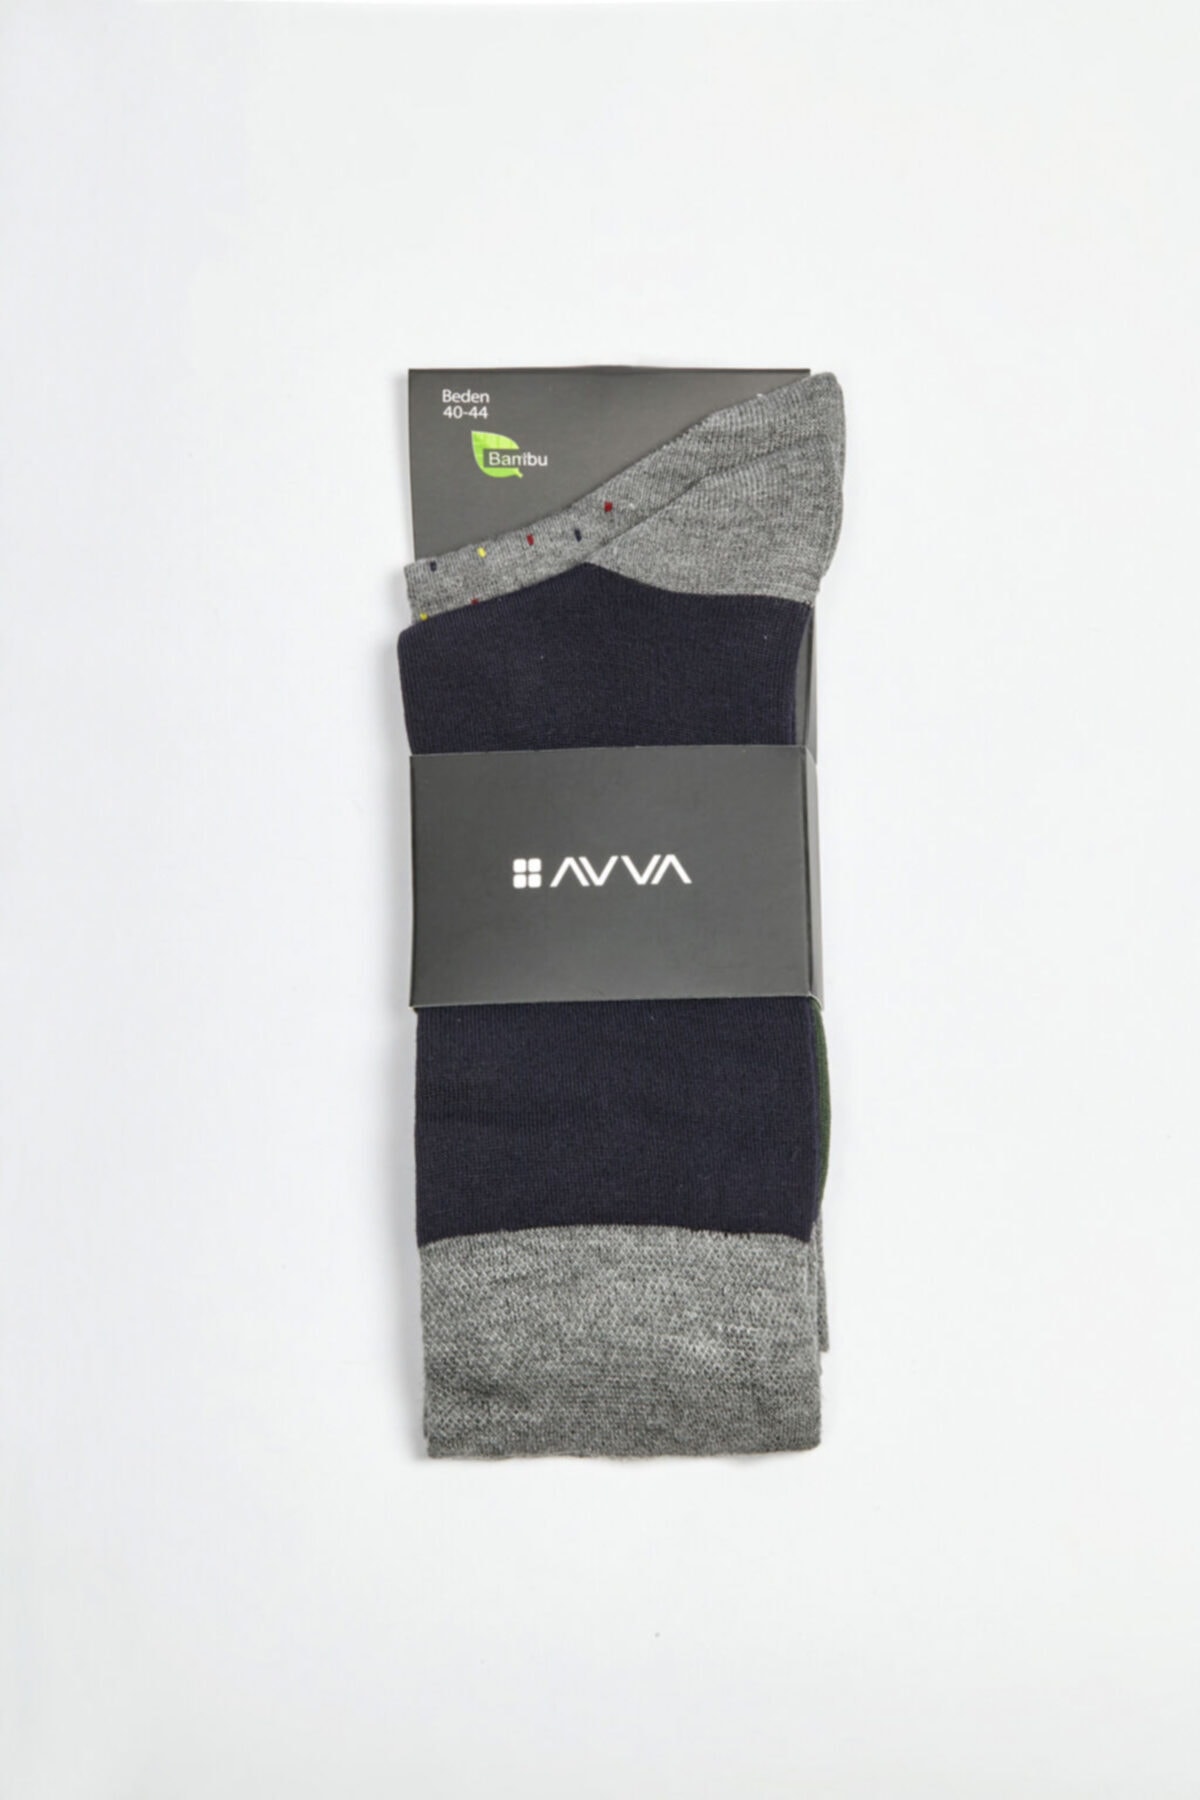 Avva Men's Navy Blue Patterned Crewneck Socks